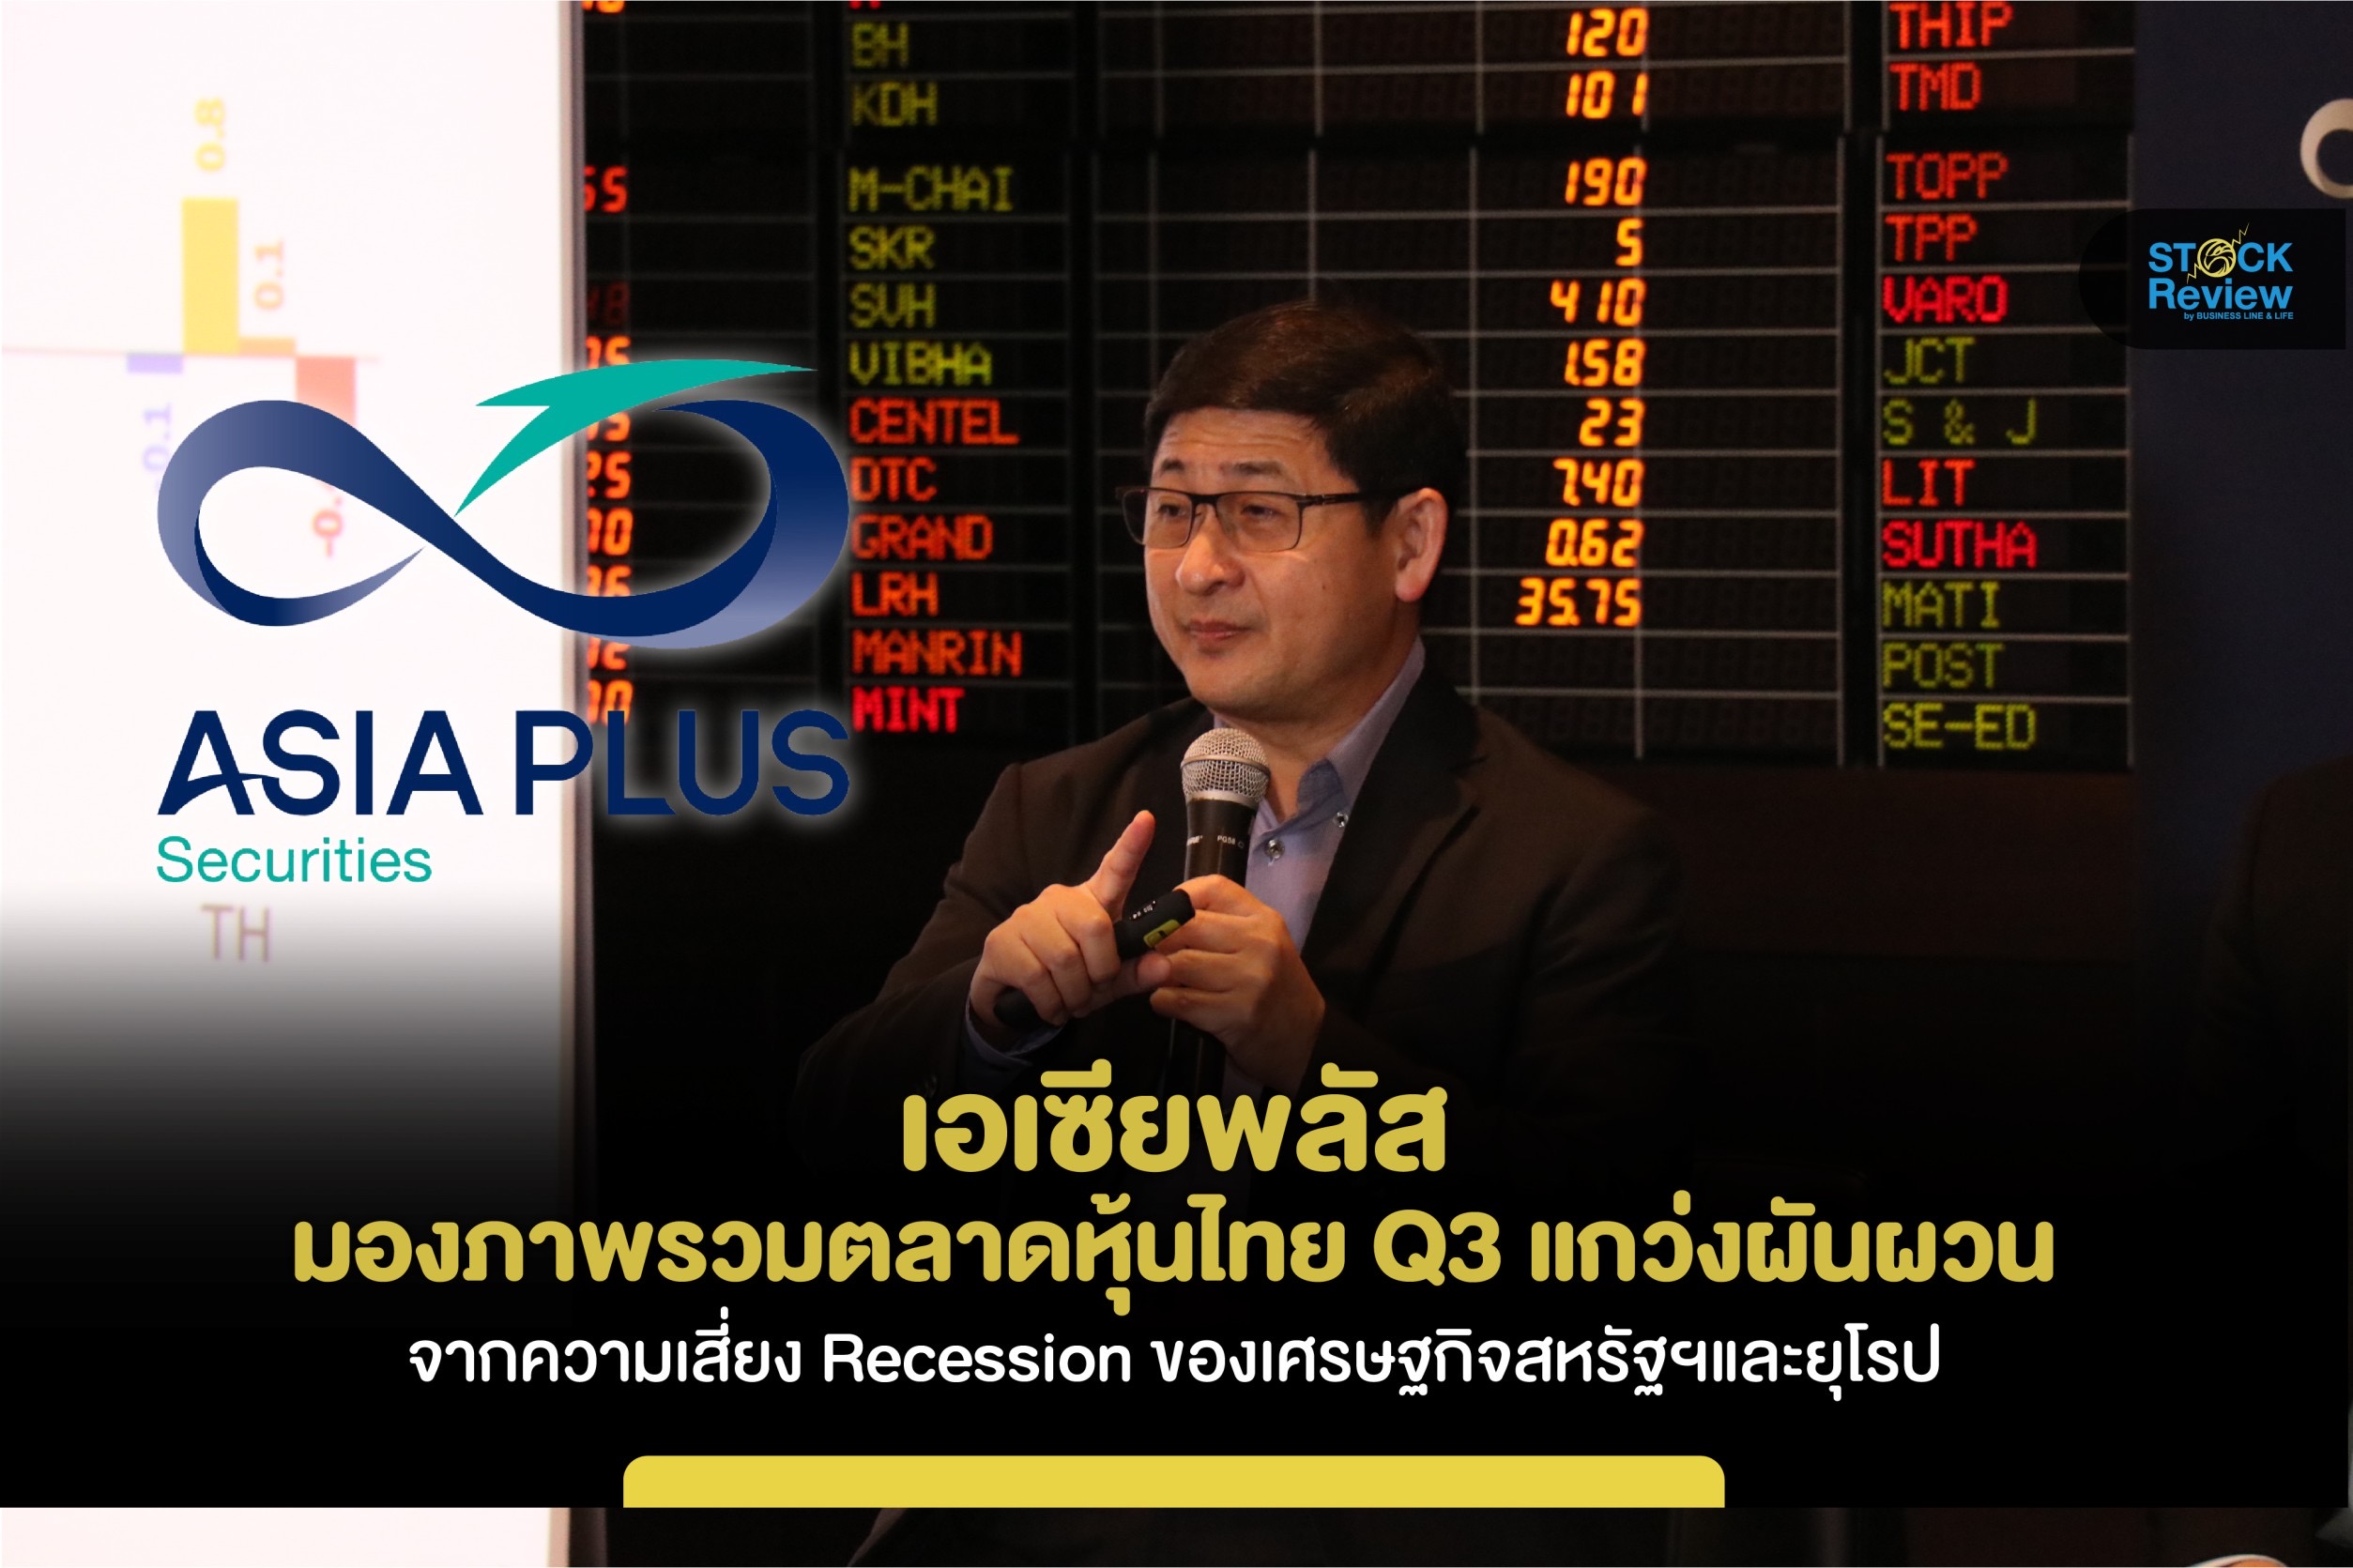 เอเซียพลัส มองภาพรวมตลาดหุ้นไทย Q3 แกว่งผันผวน